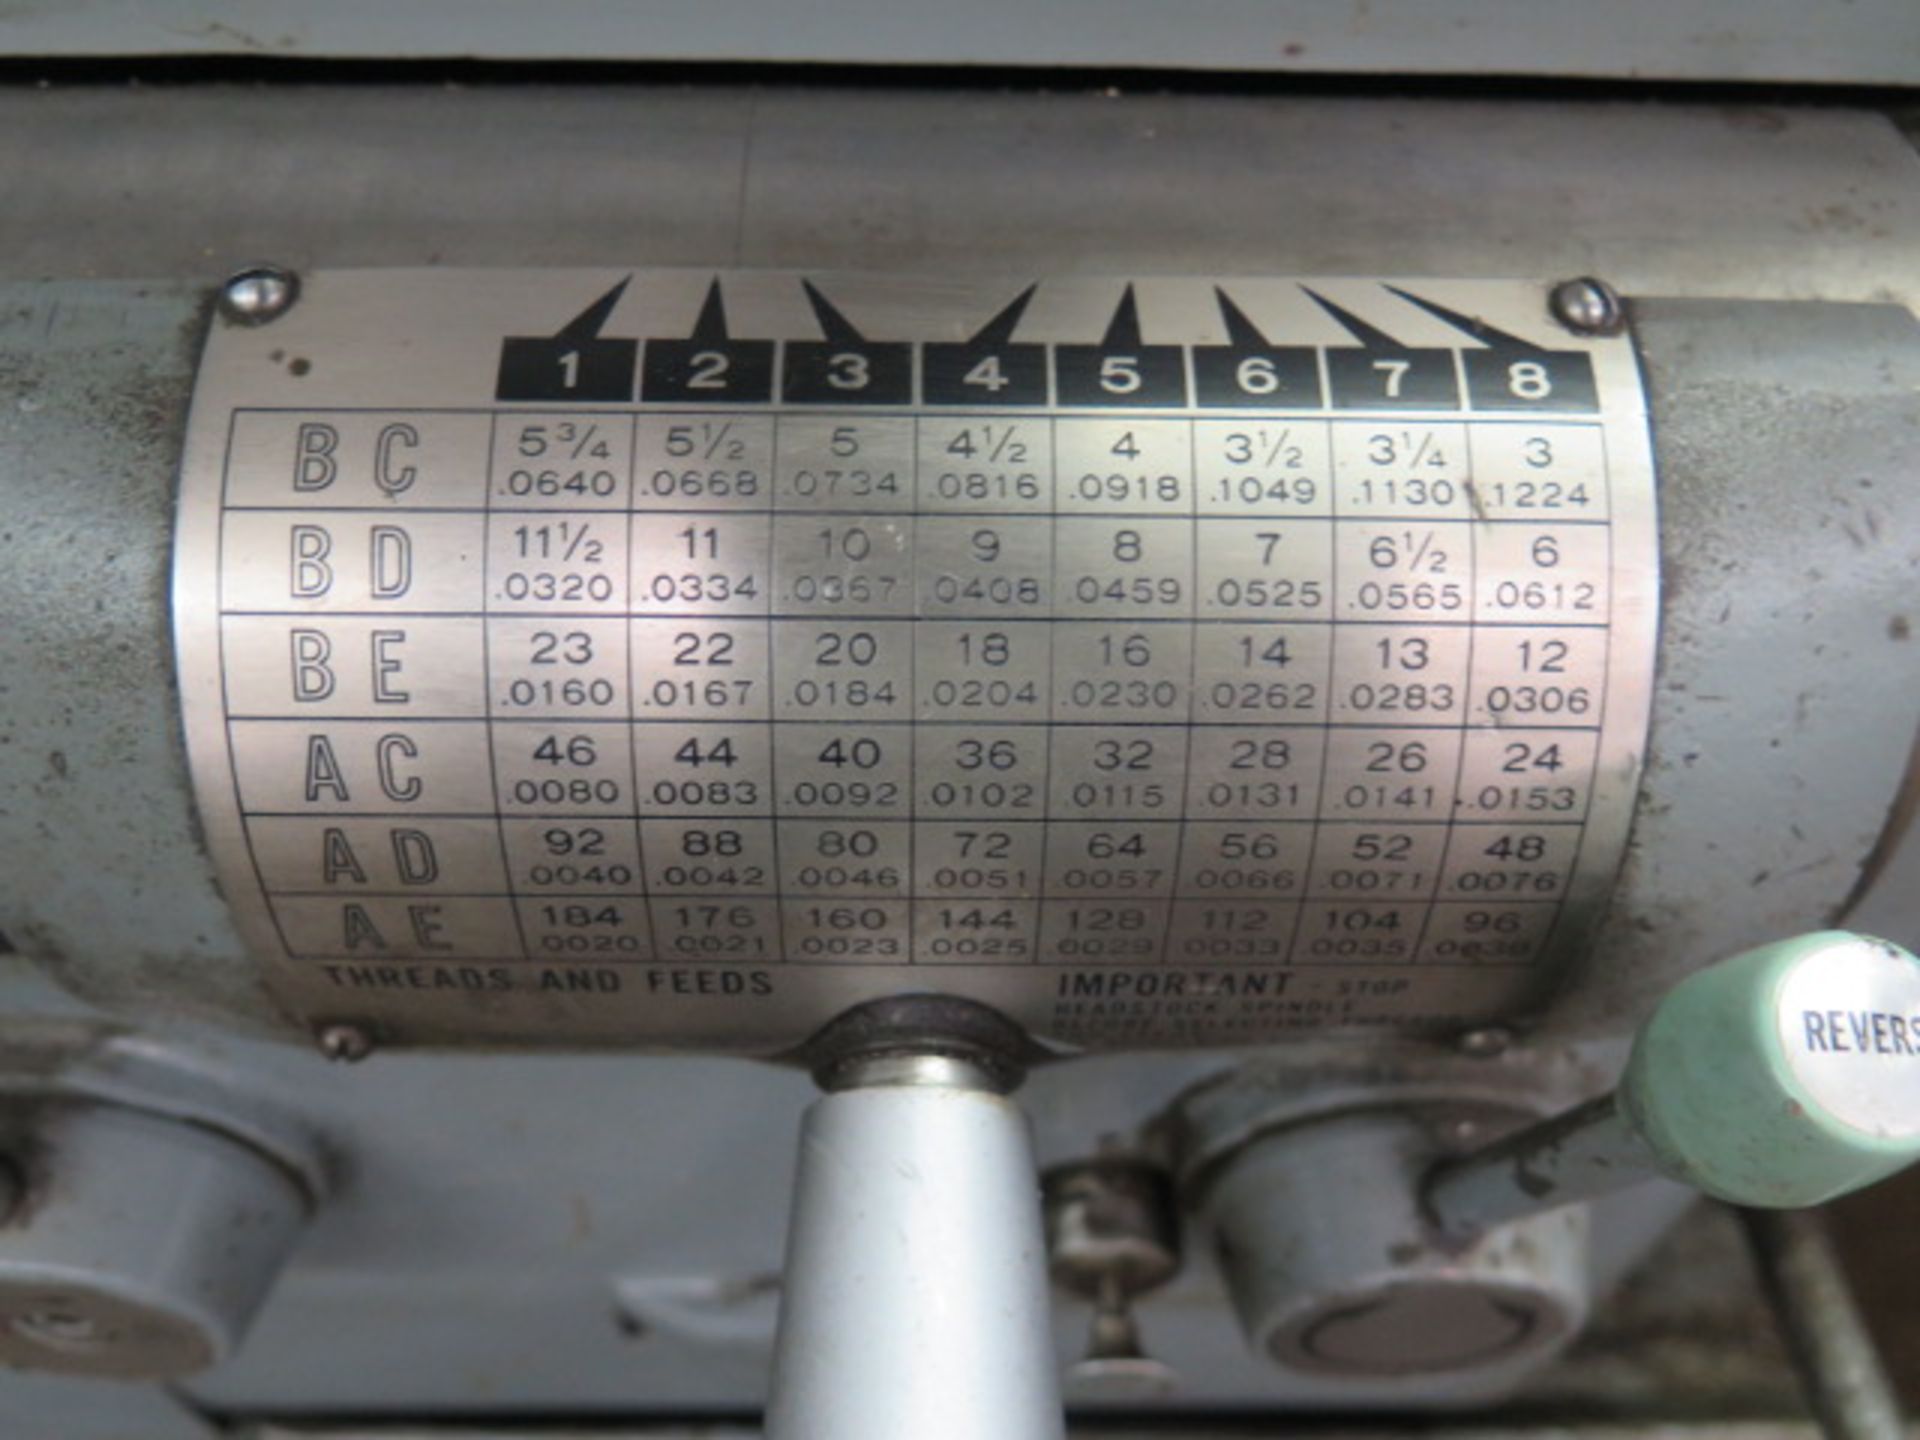 Cincinnati 15” x 48” Geared Head Lathe s/n 5501R25V-0020 w/ 53-1800 Dial Hydrashift RPM, Inch - Image 8 of 8